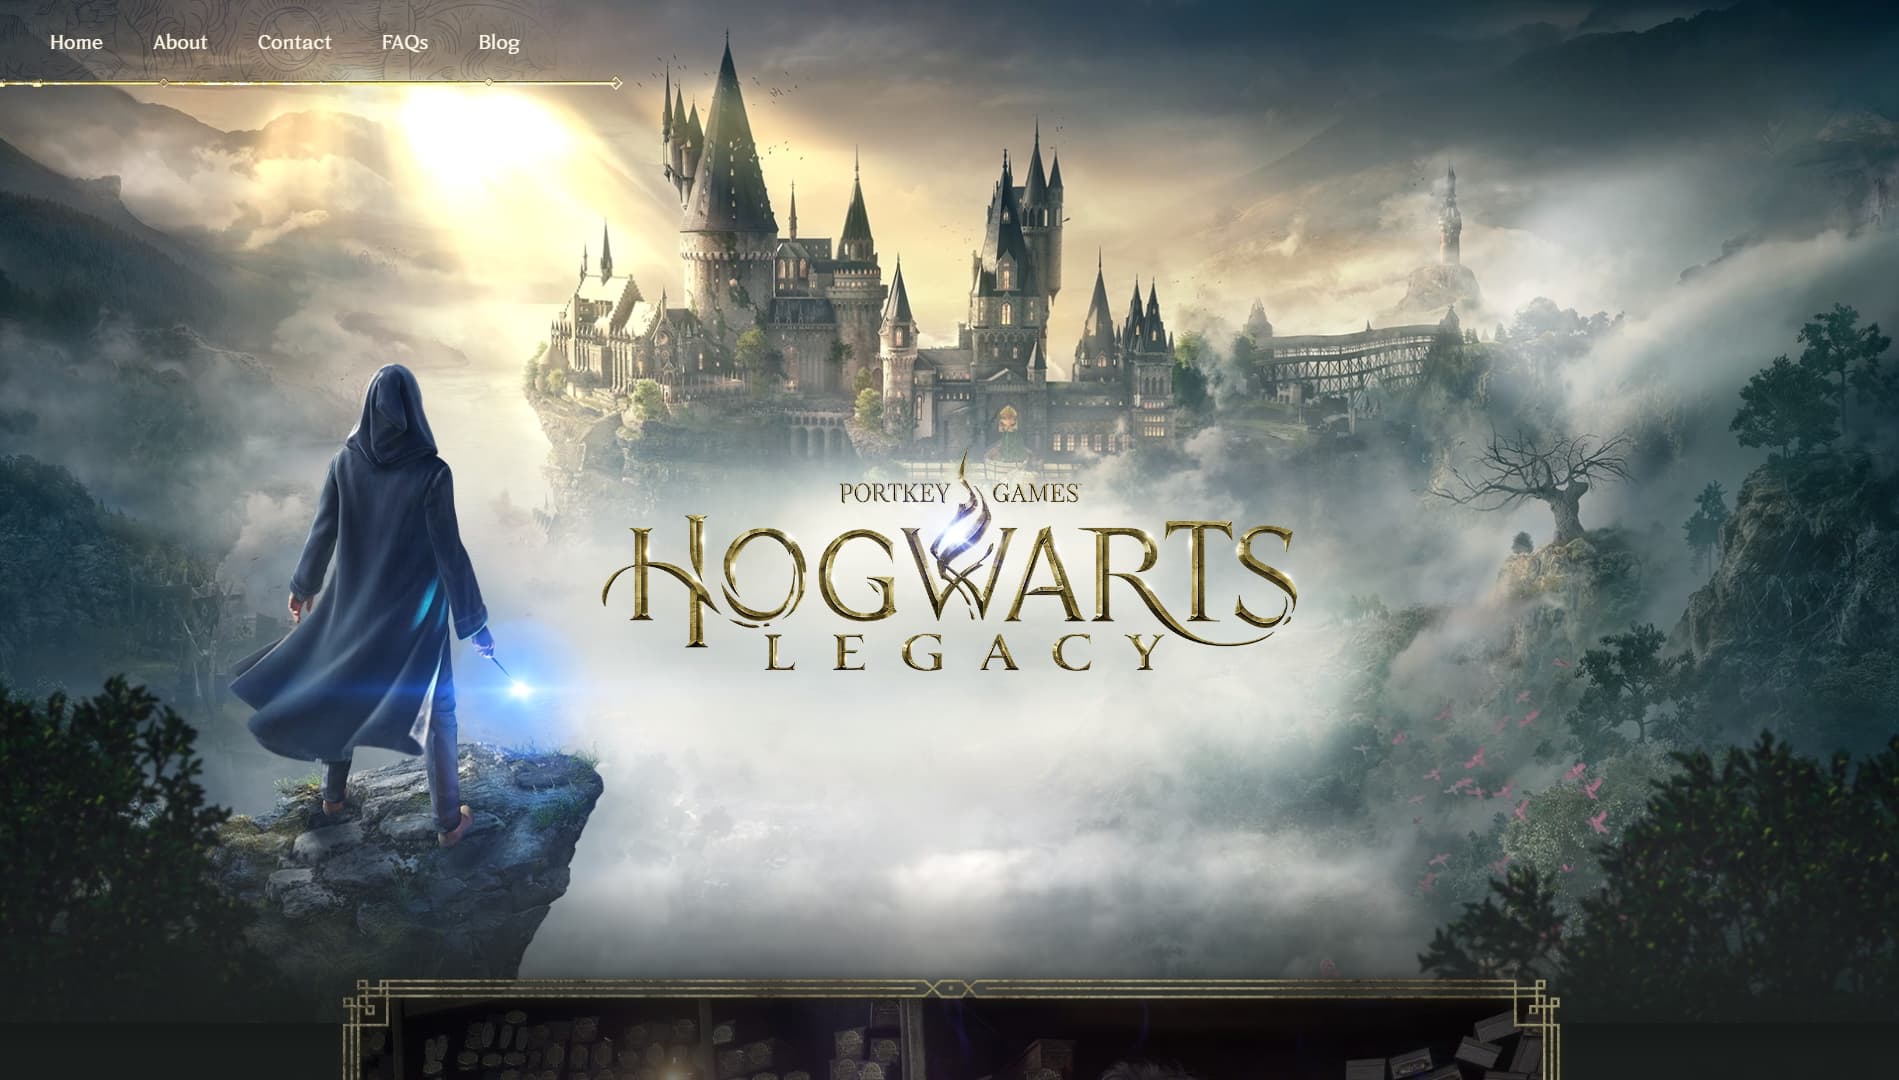 Website clon de Hogwarts Legacy